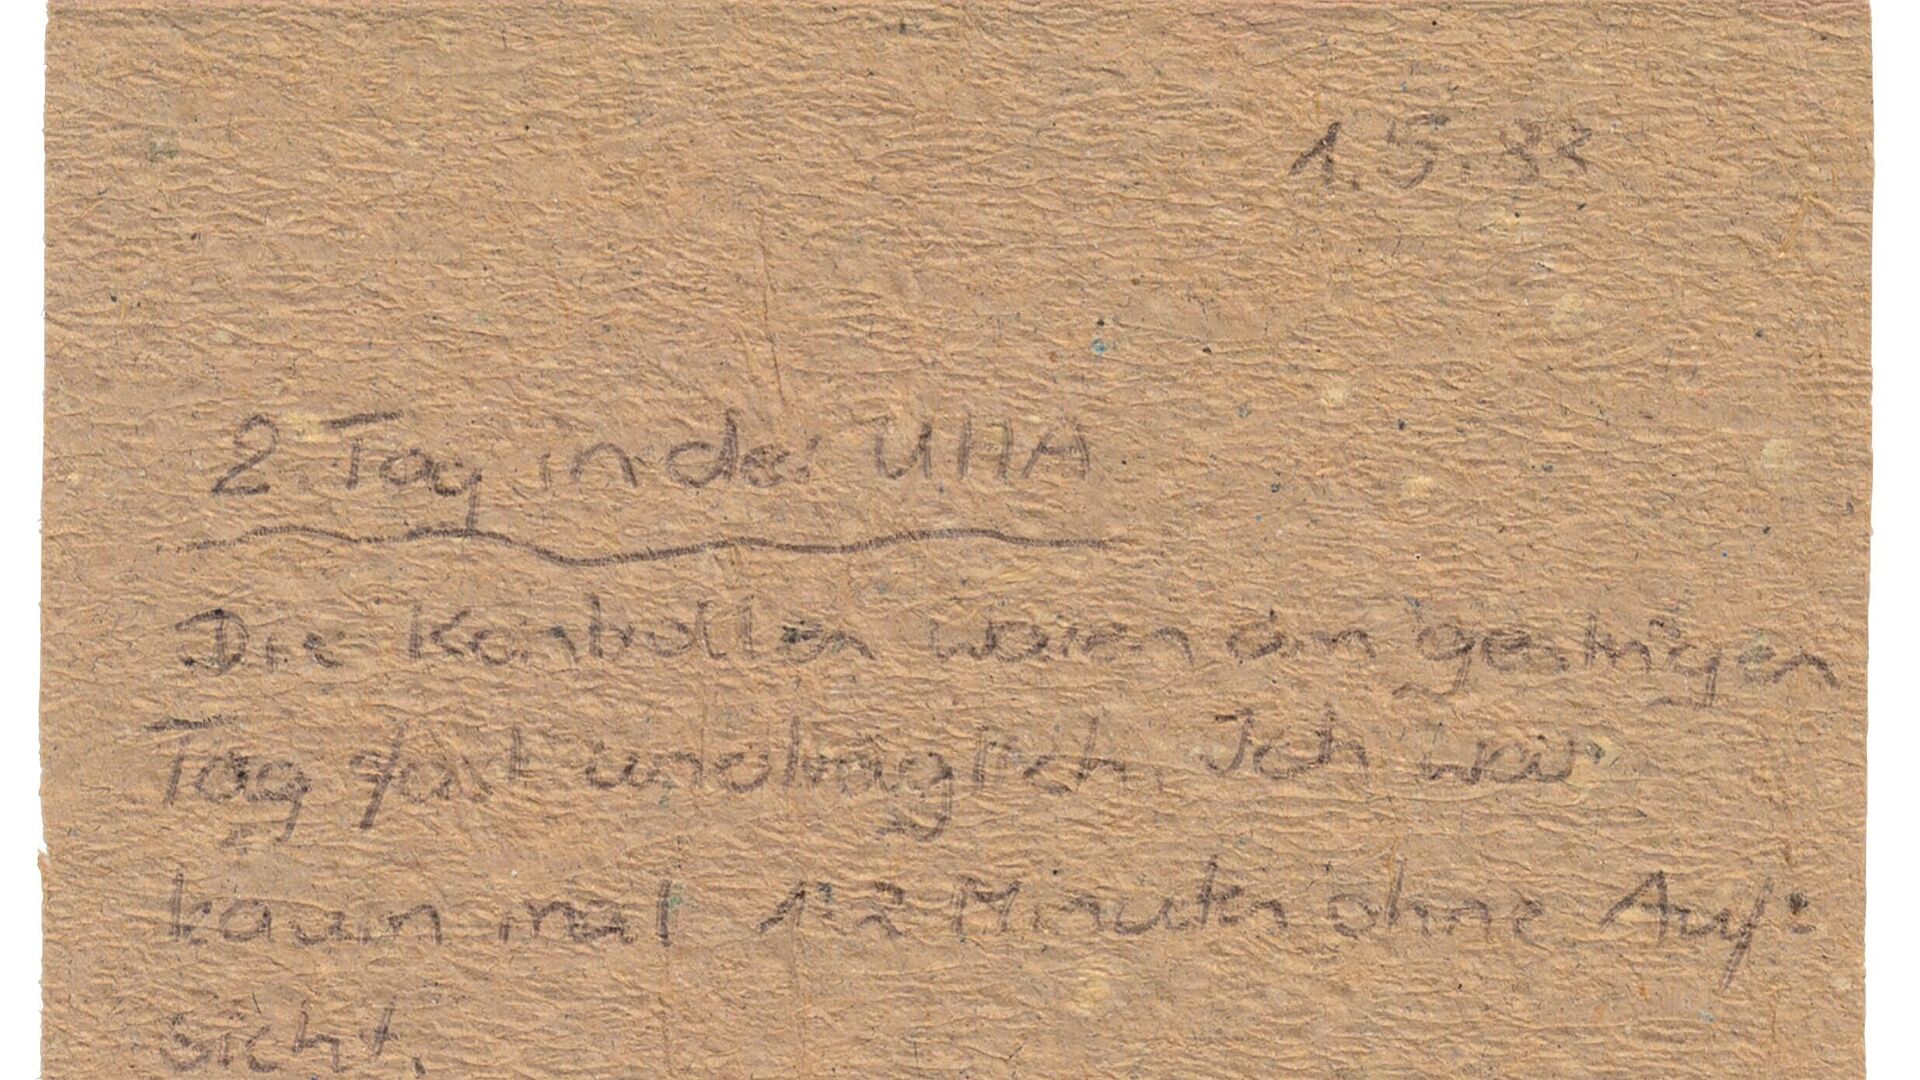 Ein handschriftlich mit Kugelschreiber beschriebenes Stück Toilettenpapier.